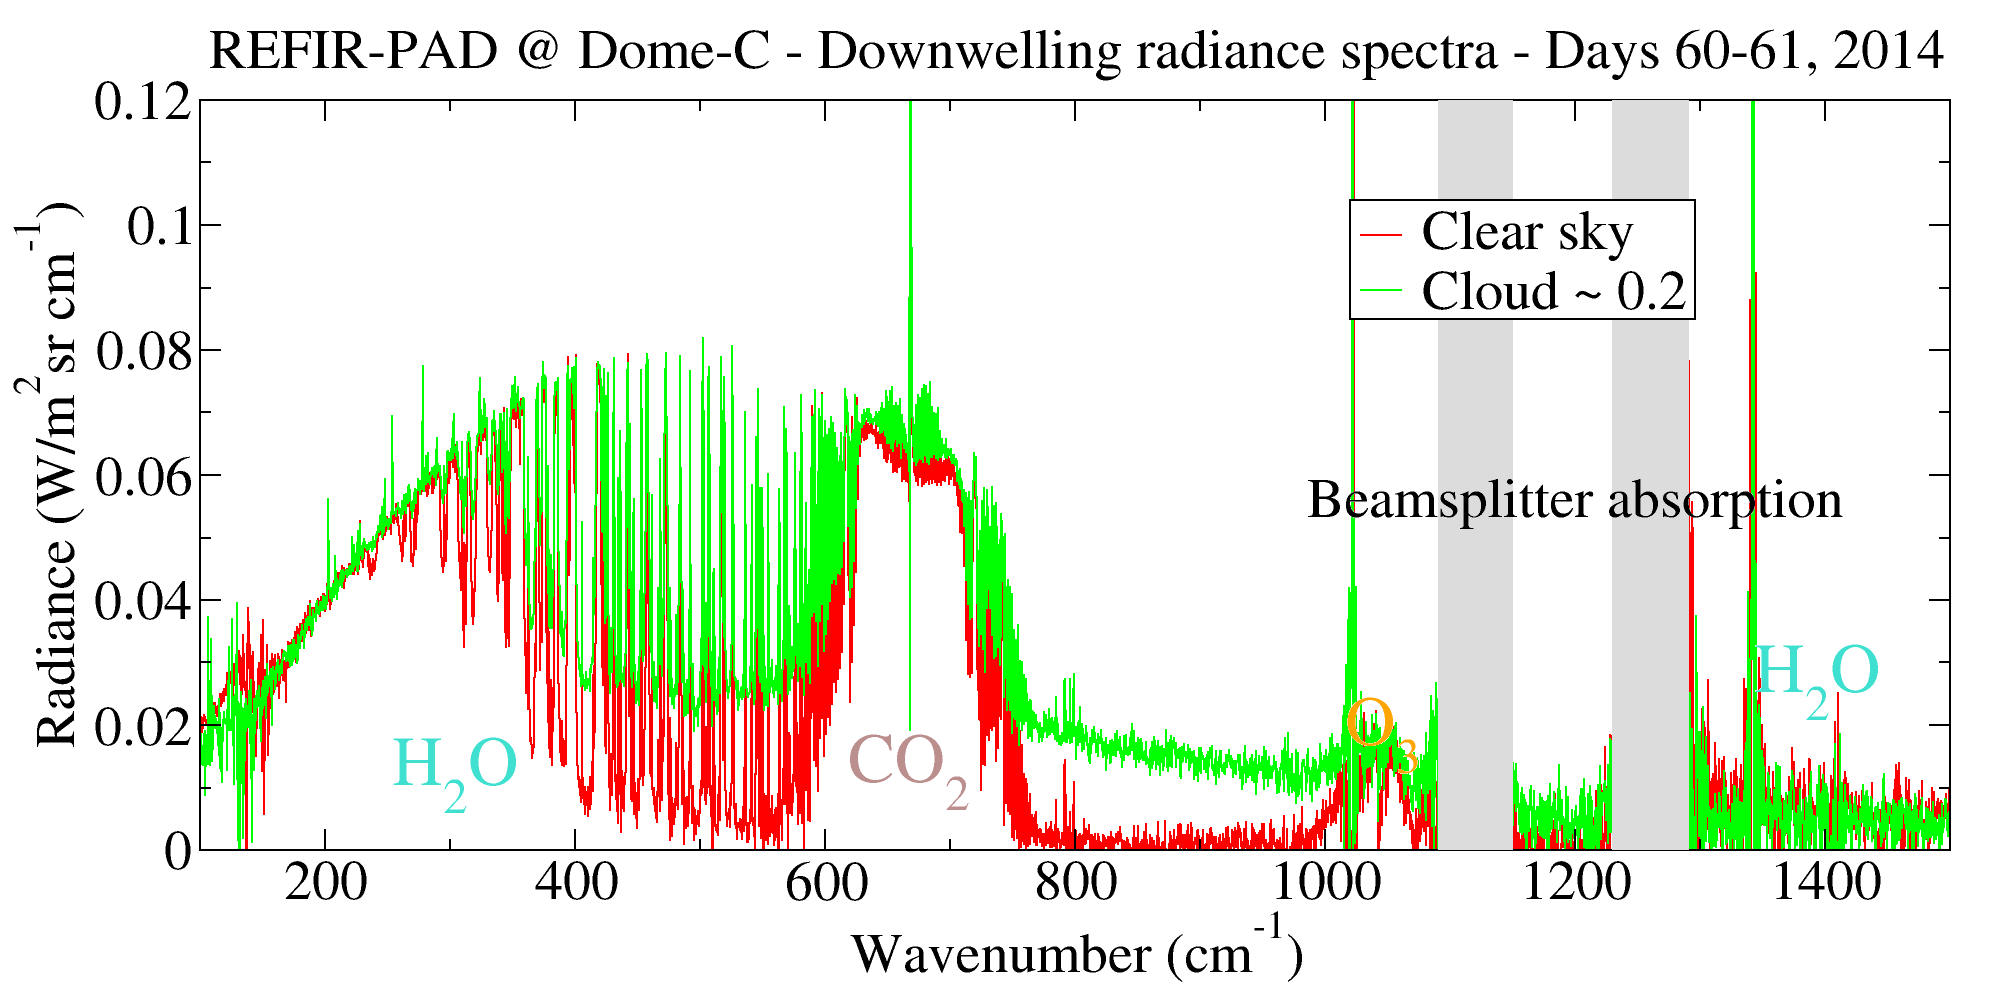 REFIR-PAD calibrated spectra